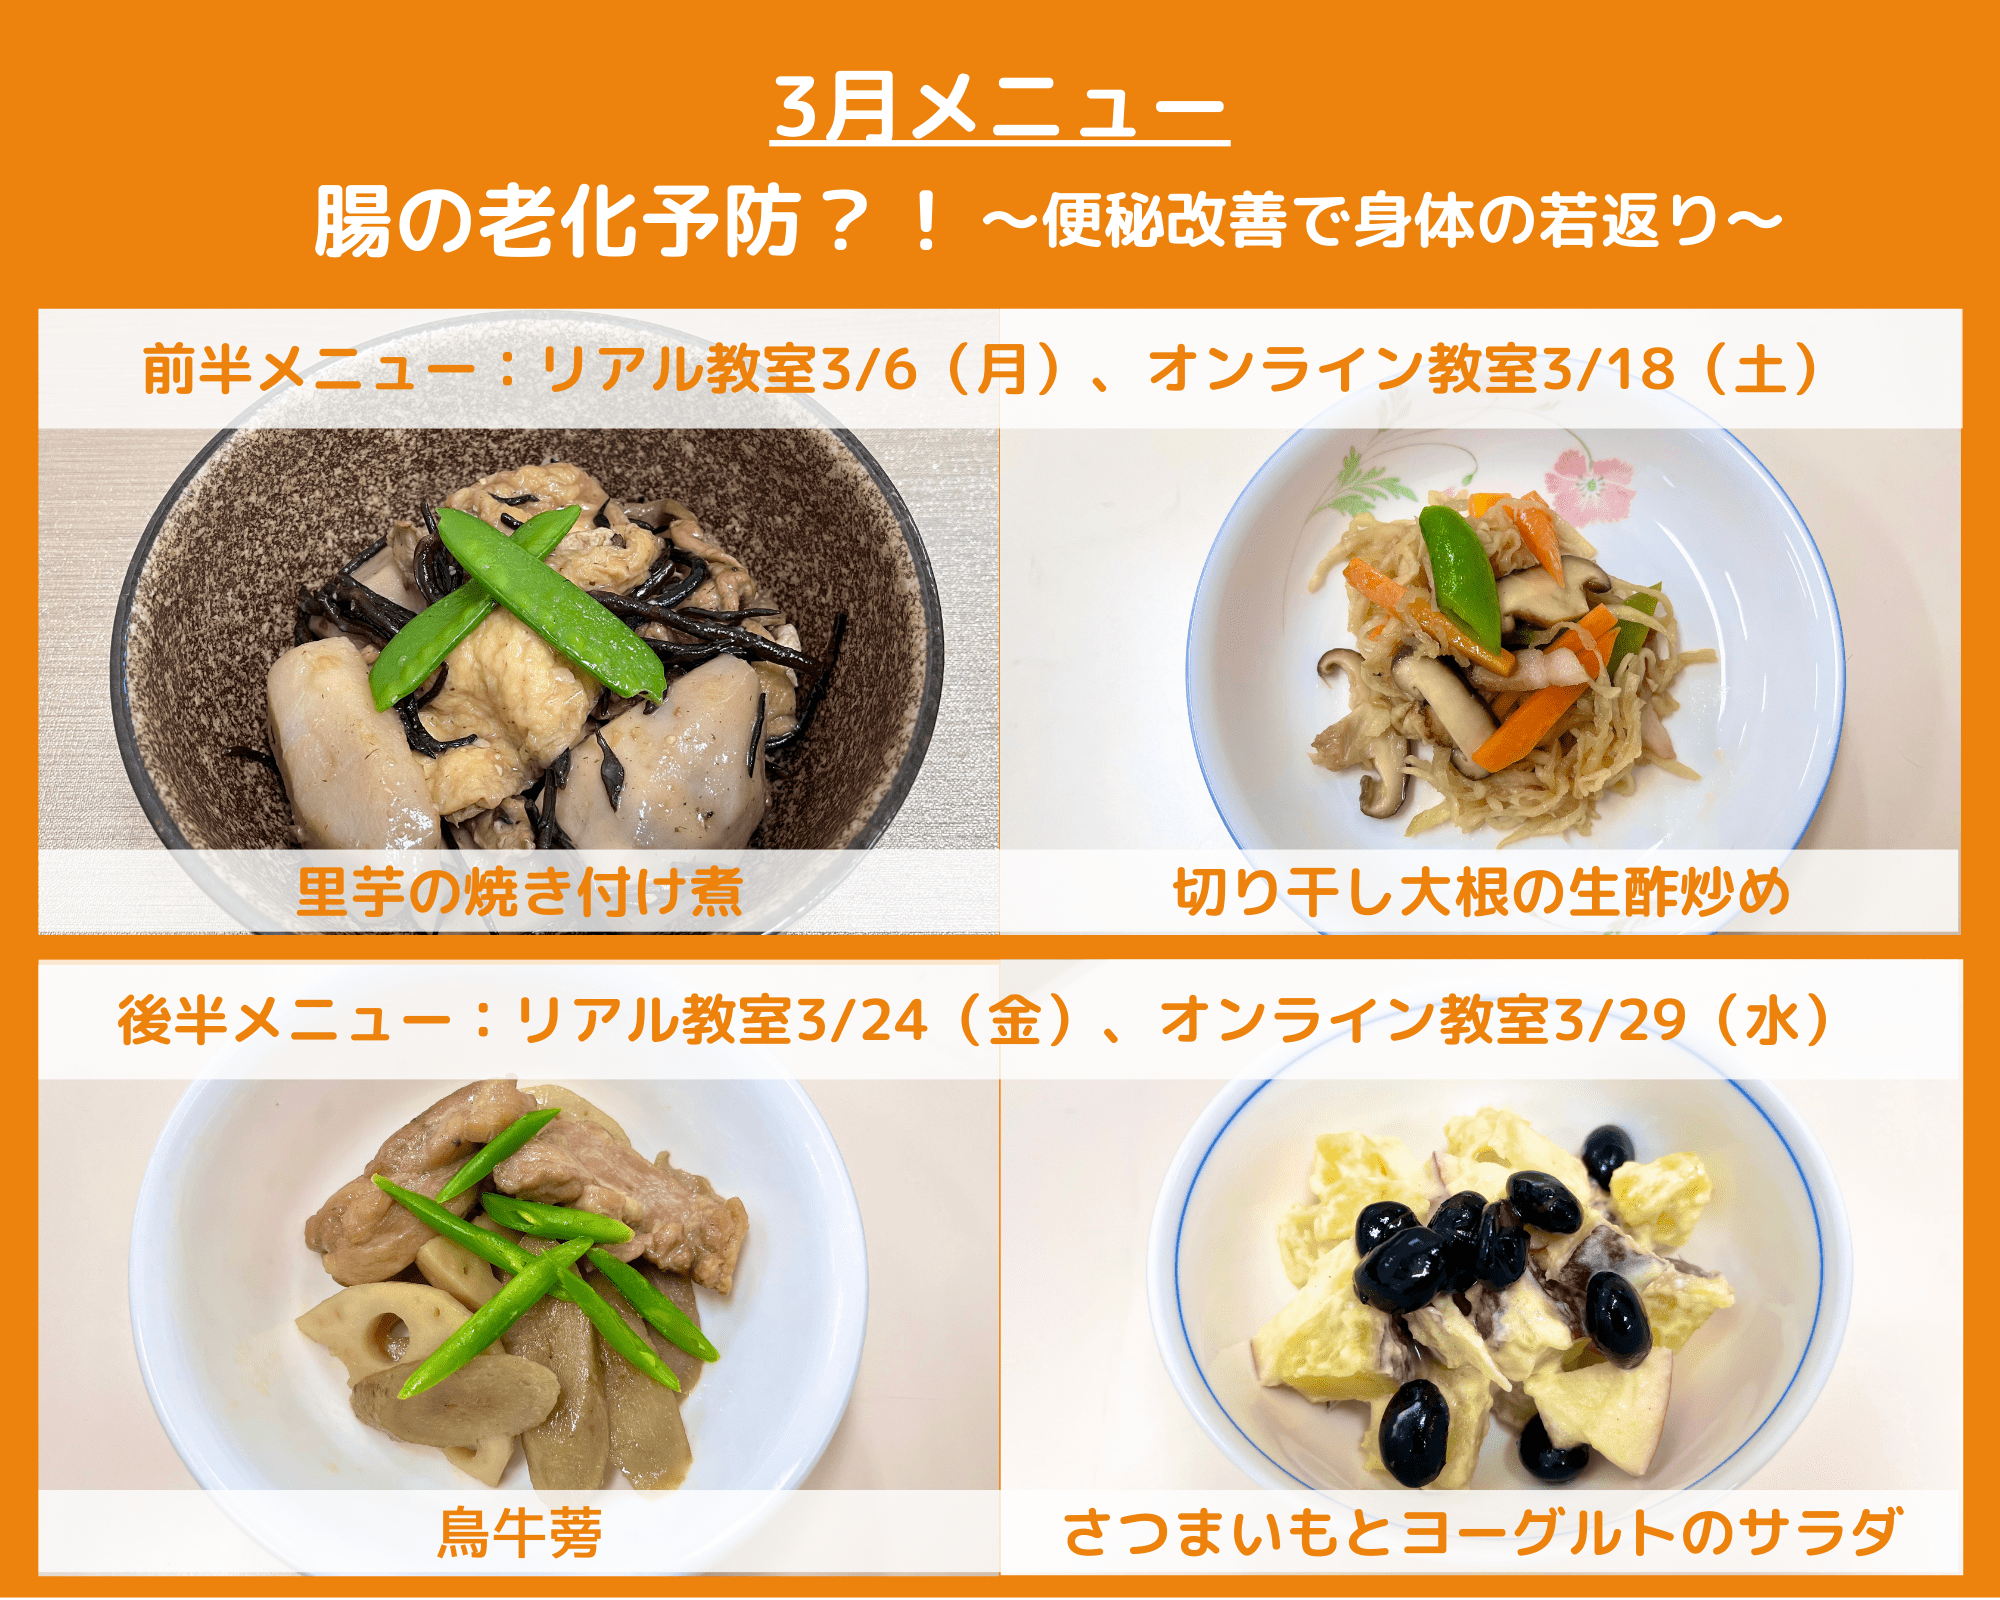 【タクミキッチン】HP用メニュー-min